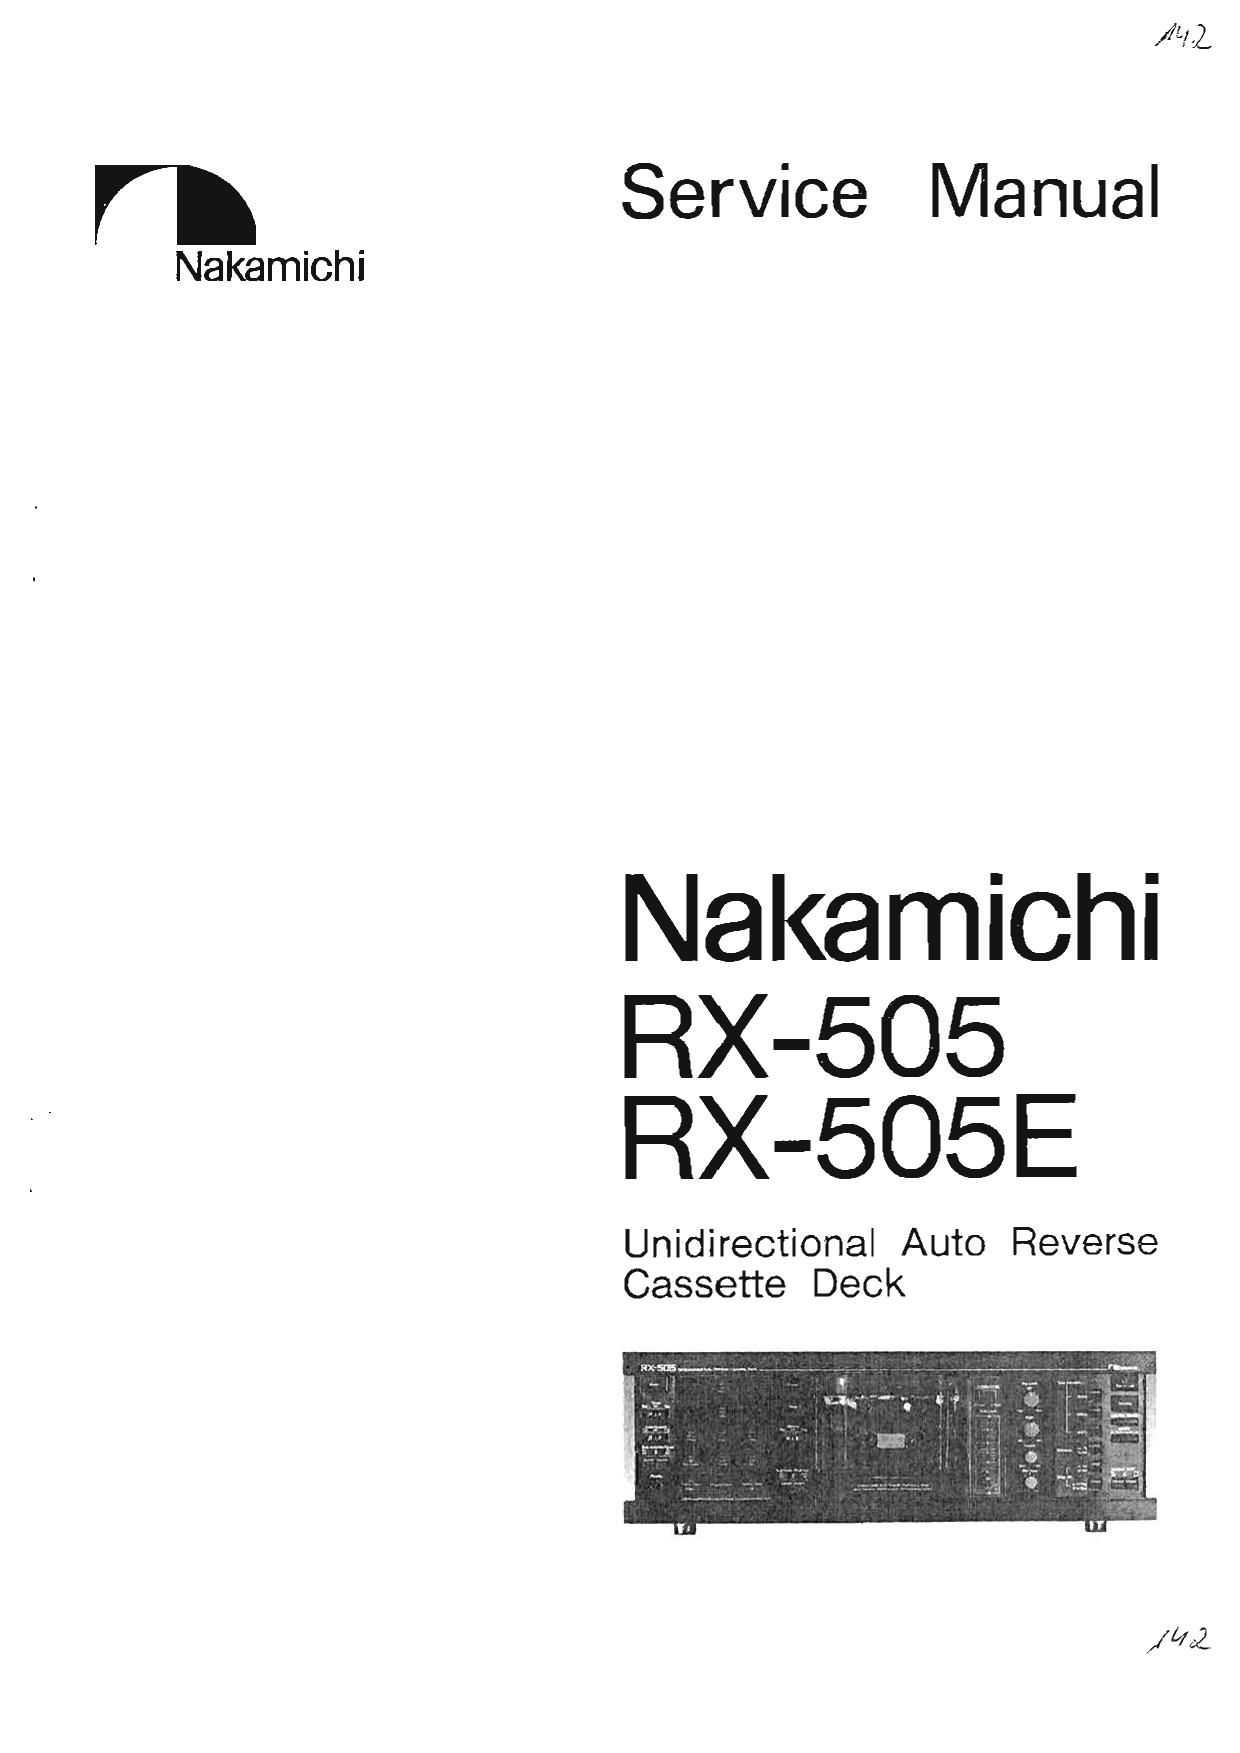 Nakamichi RX 505E Service Manual